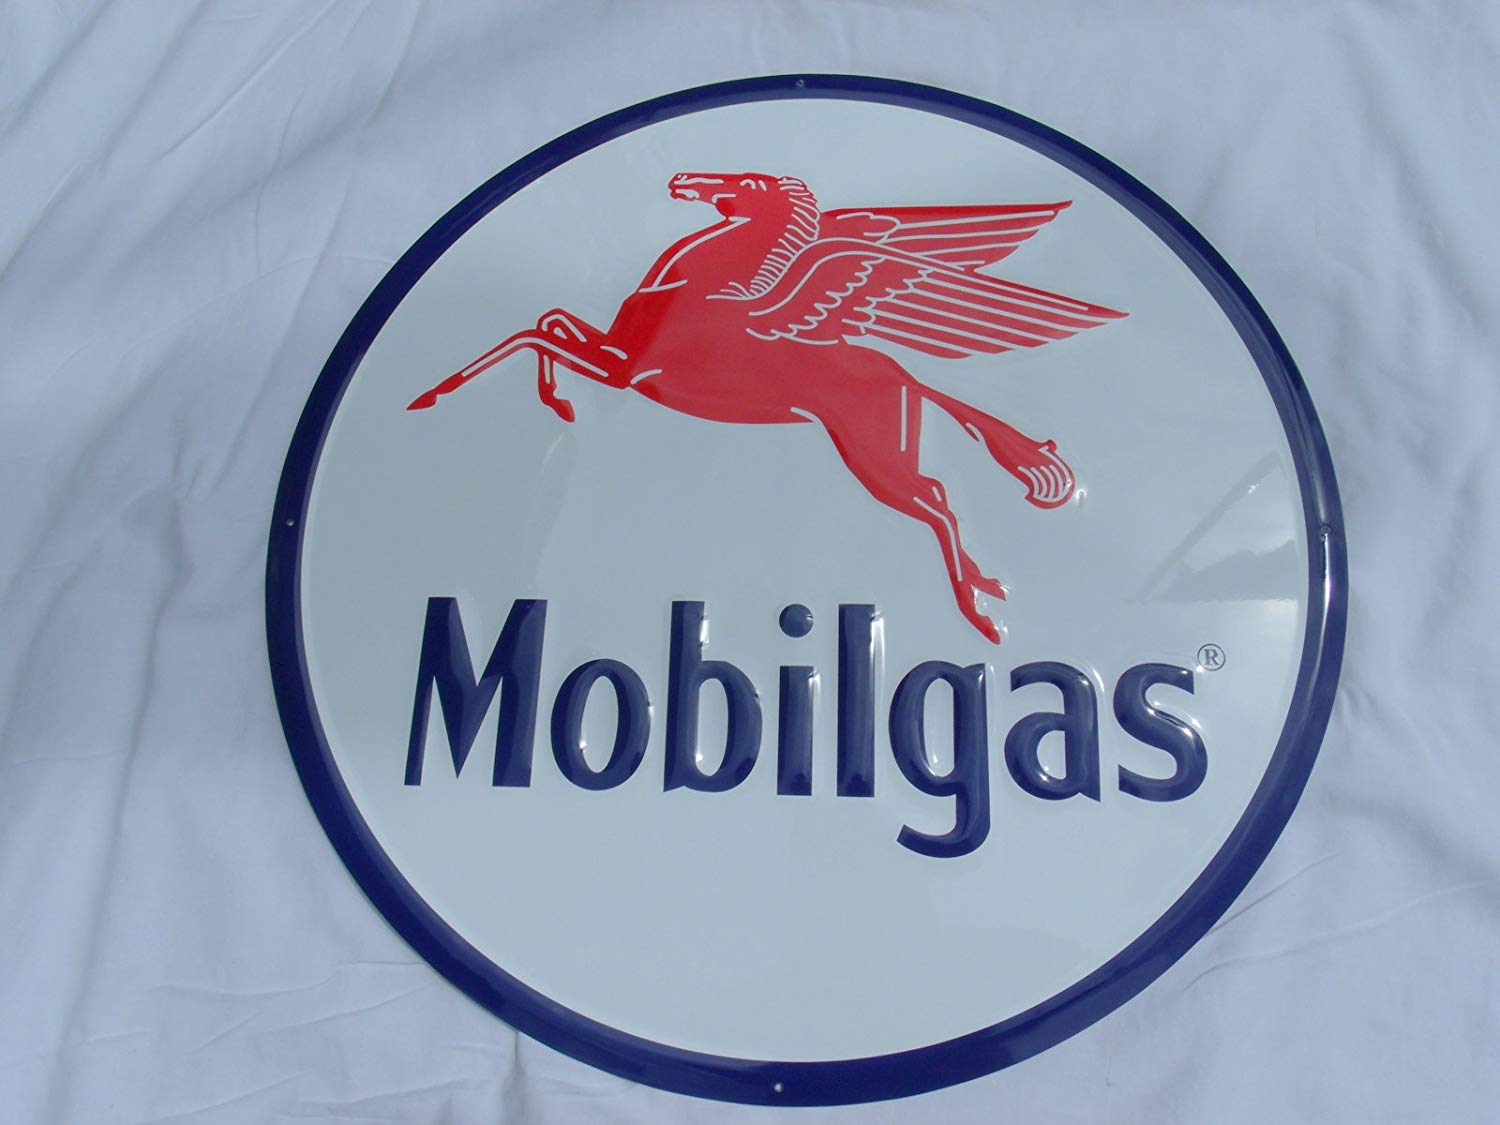 Pegasus Gas Station Logo - Amazon.com: LARGE MOBILGAS SIGN,MOBIL GAS STATION ADVERTISING ...